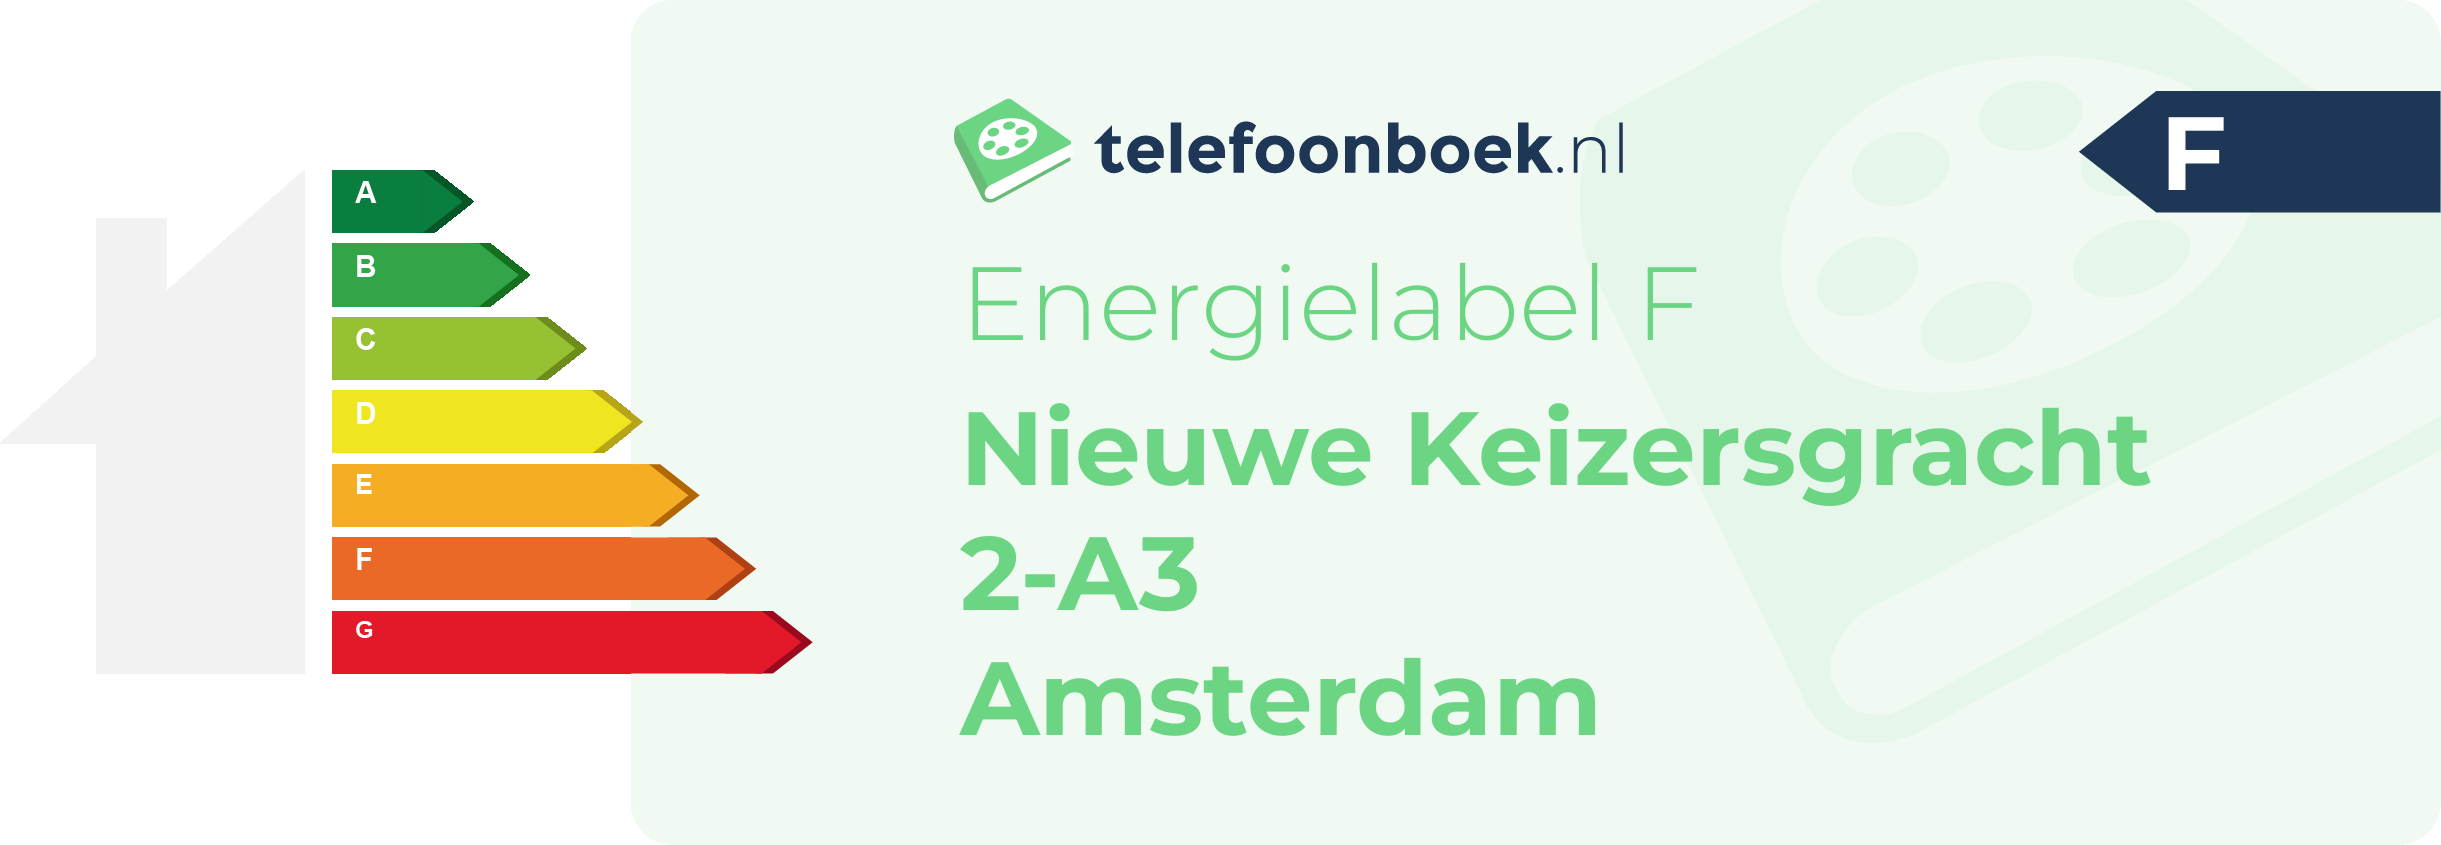 Energielabel Nieuwe Keizersgracht 2-A3 Amsterdam